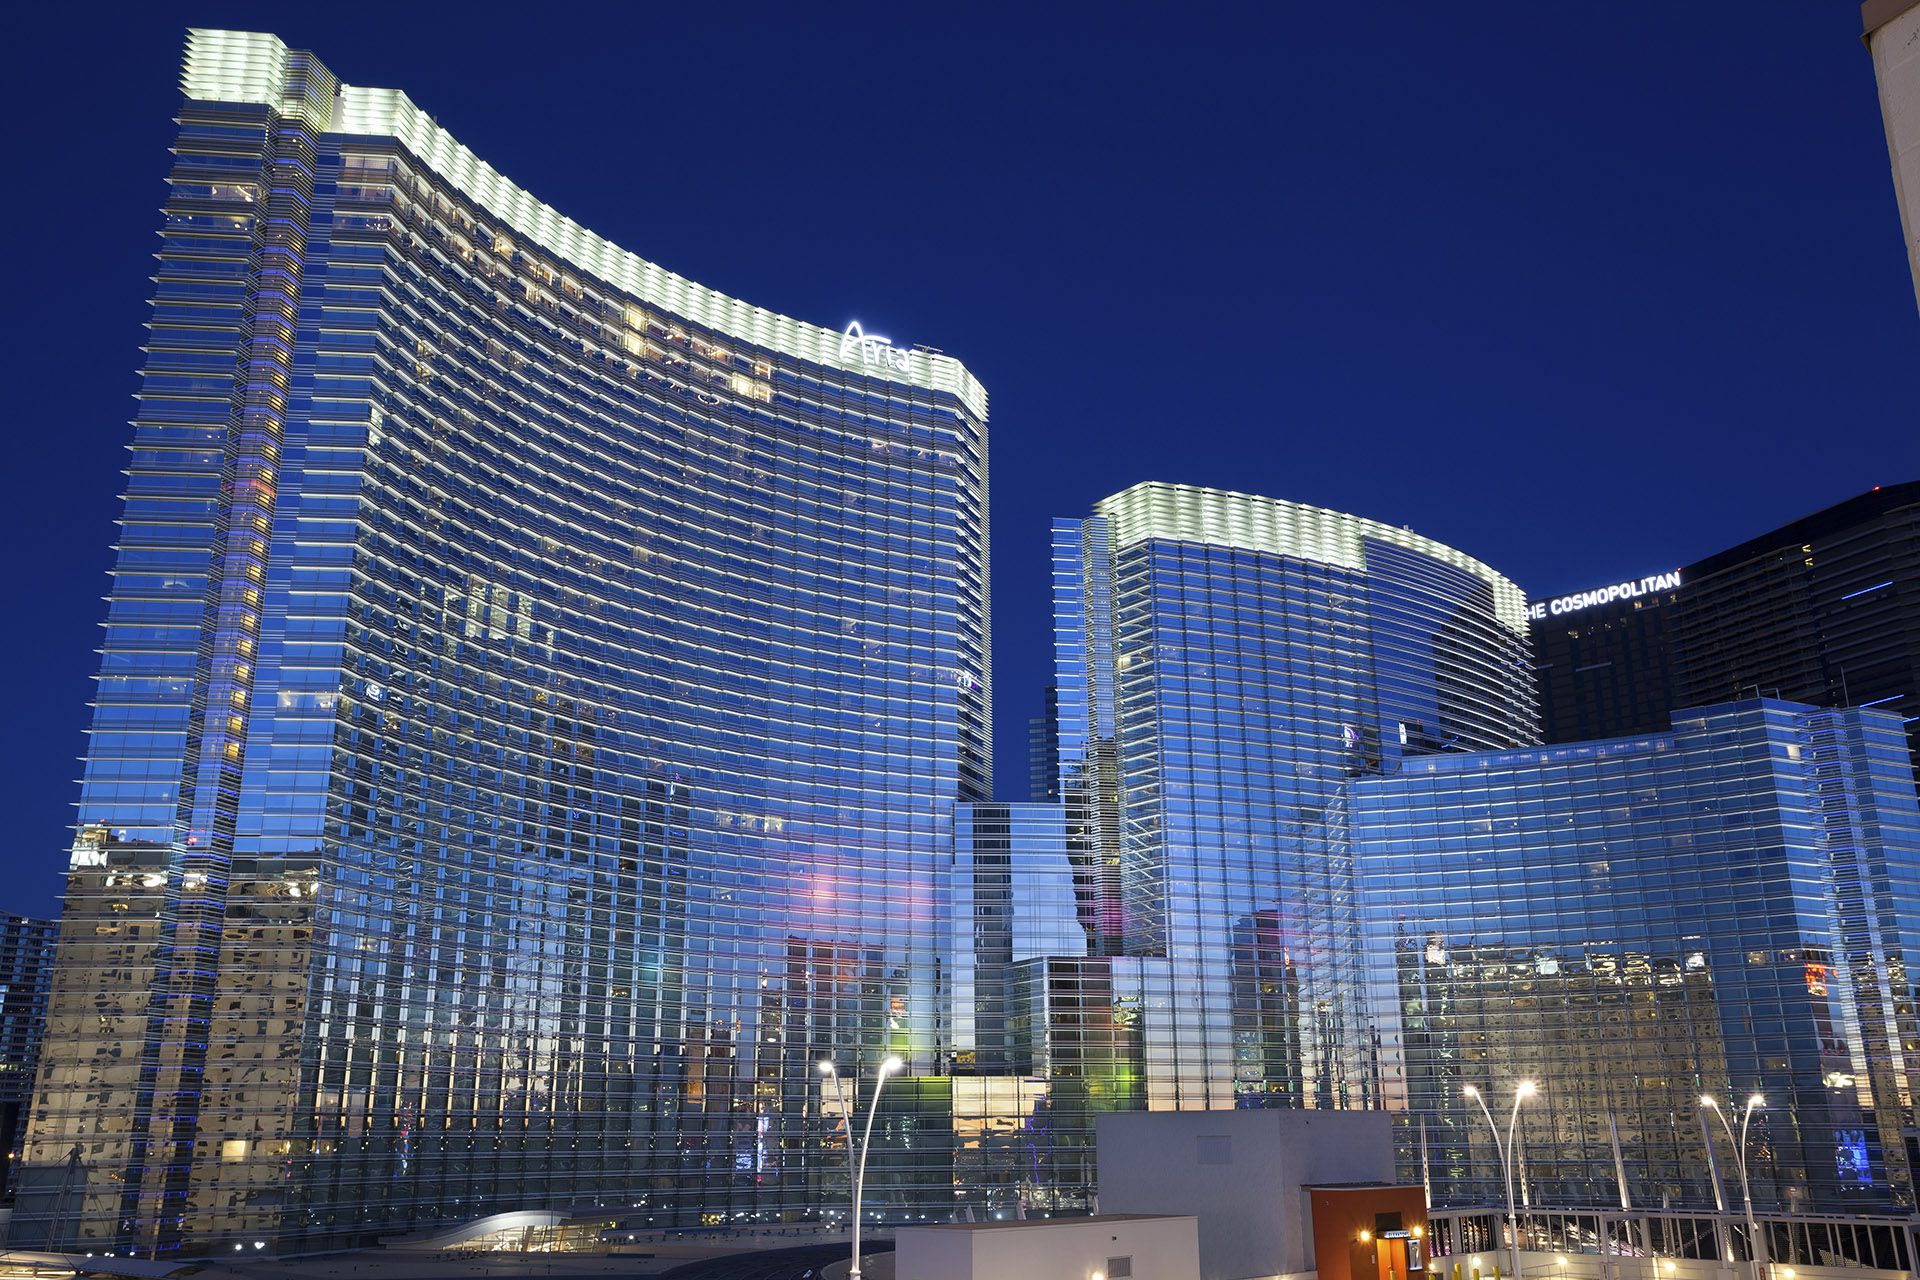 En Las Vegas, Estados Unidos, César Pelli diseñó un proyecto llamado Aria Resort & Casino con un total de 961 100 m2, con 4.000 habitaciones, área de casino, un centro de convenciones de 3 pisos, oficinas, dos estacionamientos y otro subterráneo debajo del casino.